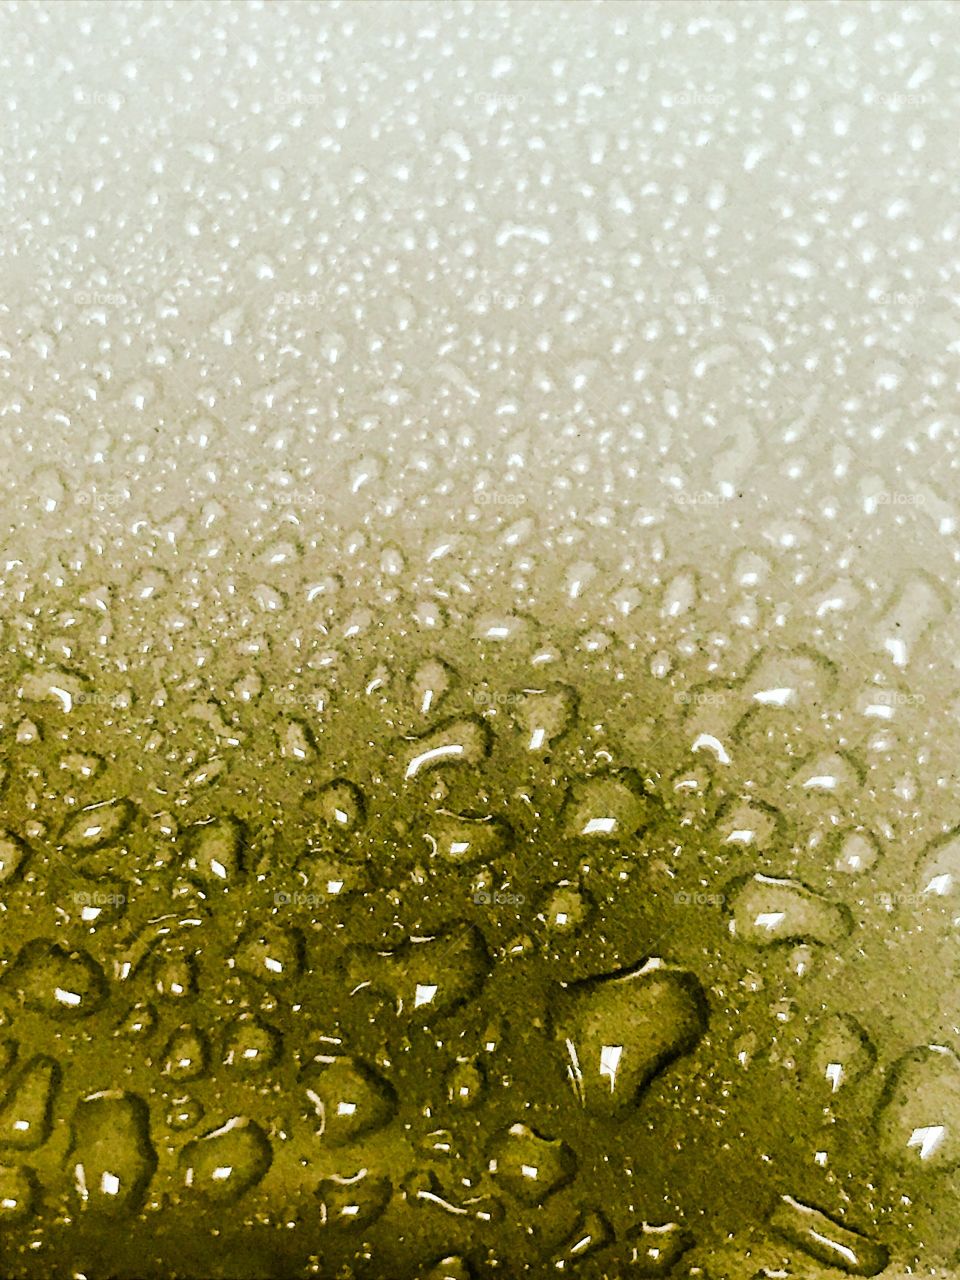 Water drops close up